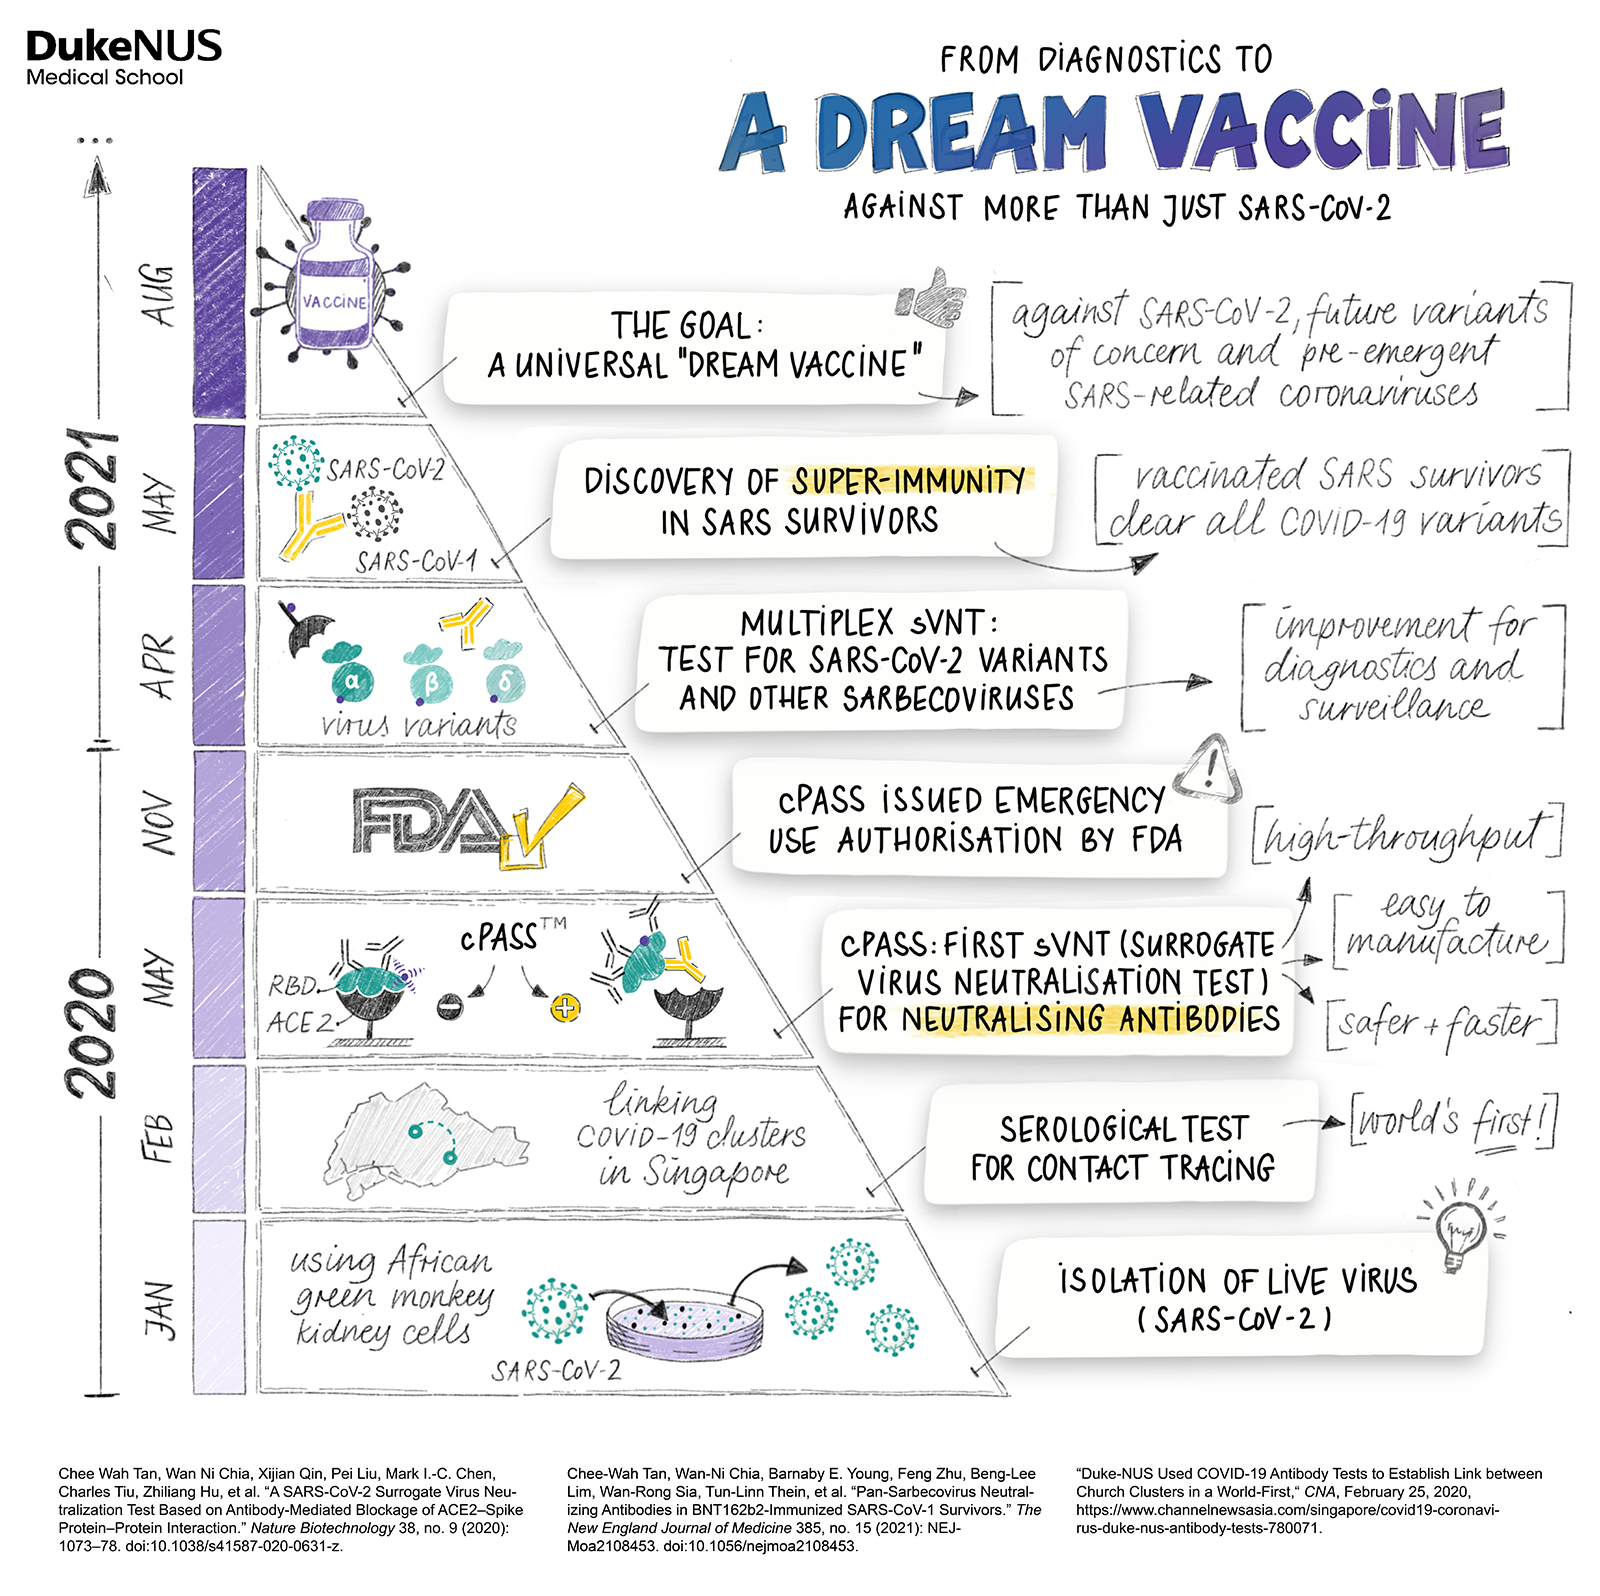 Making a dream vaccine